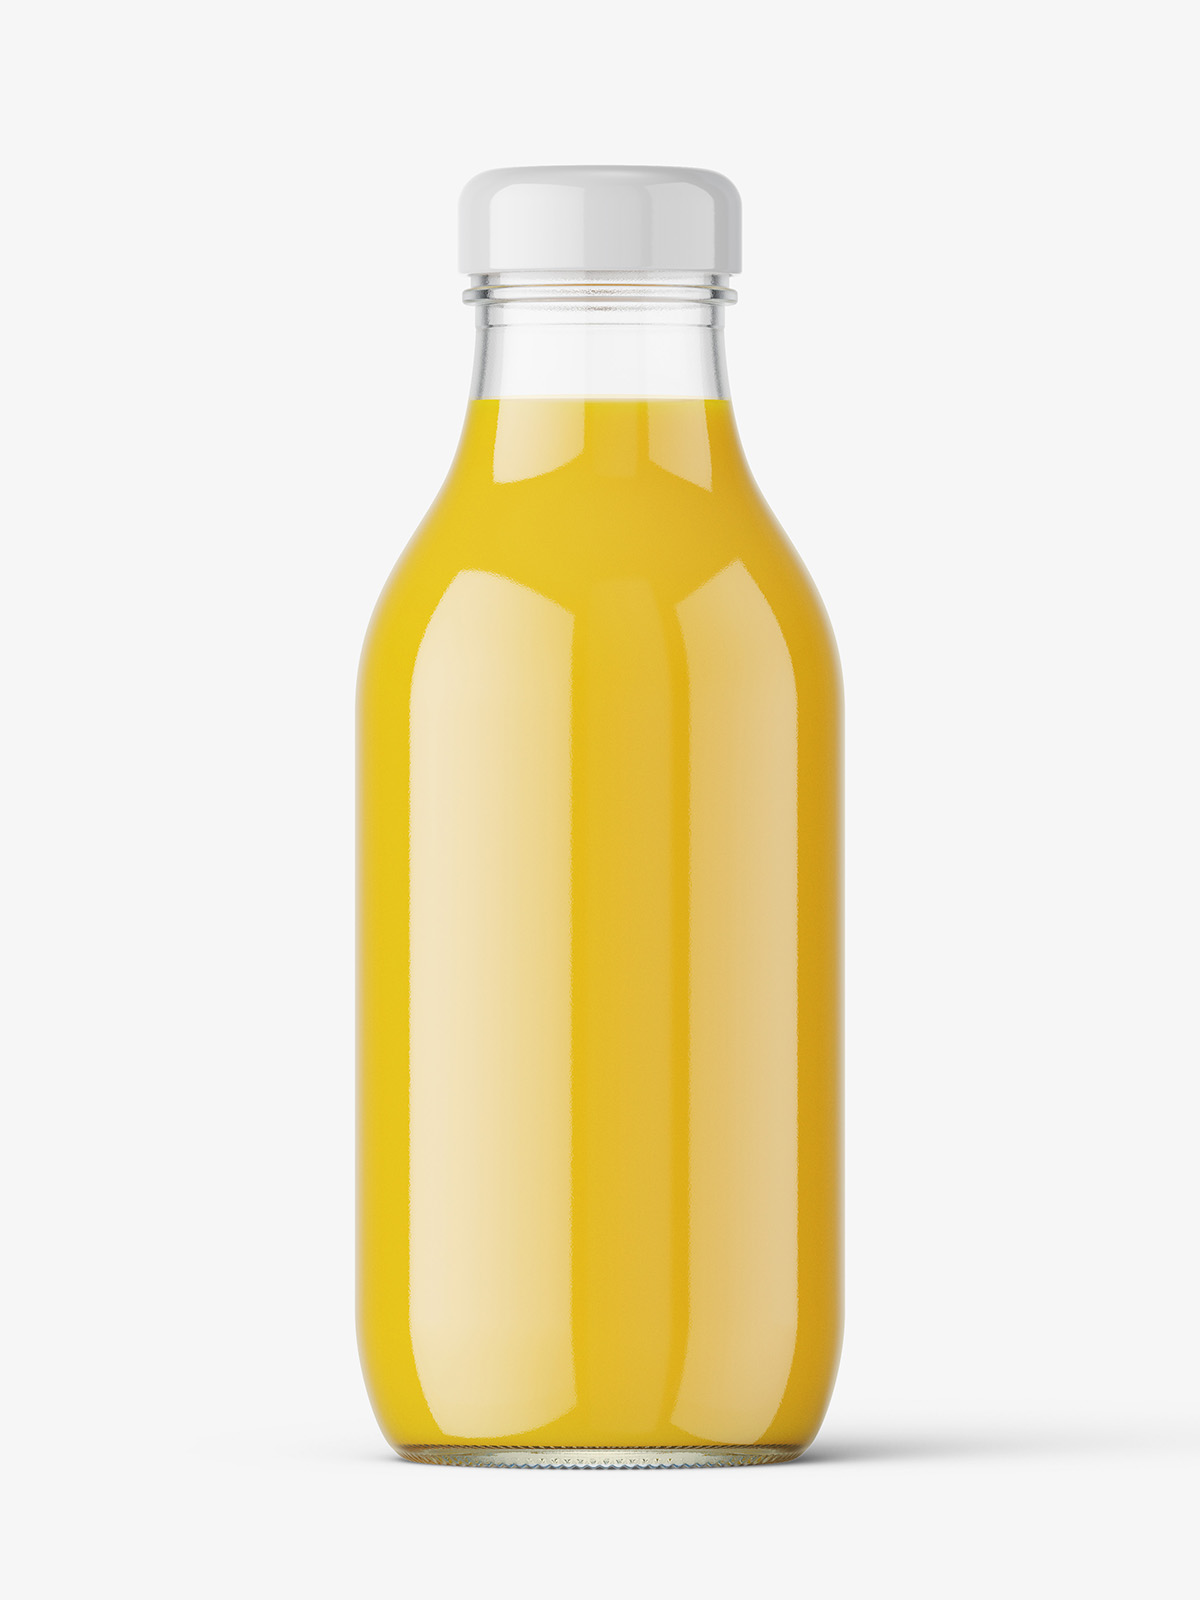 https://smartymockups.com/wp-content/uploads/2021/02/Orange_Juice_Bottle_Mockup_1.jpg